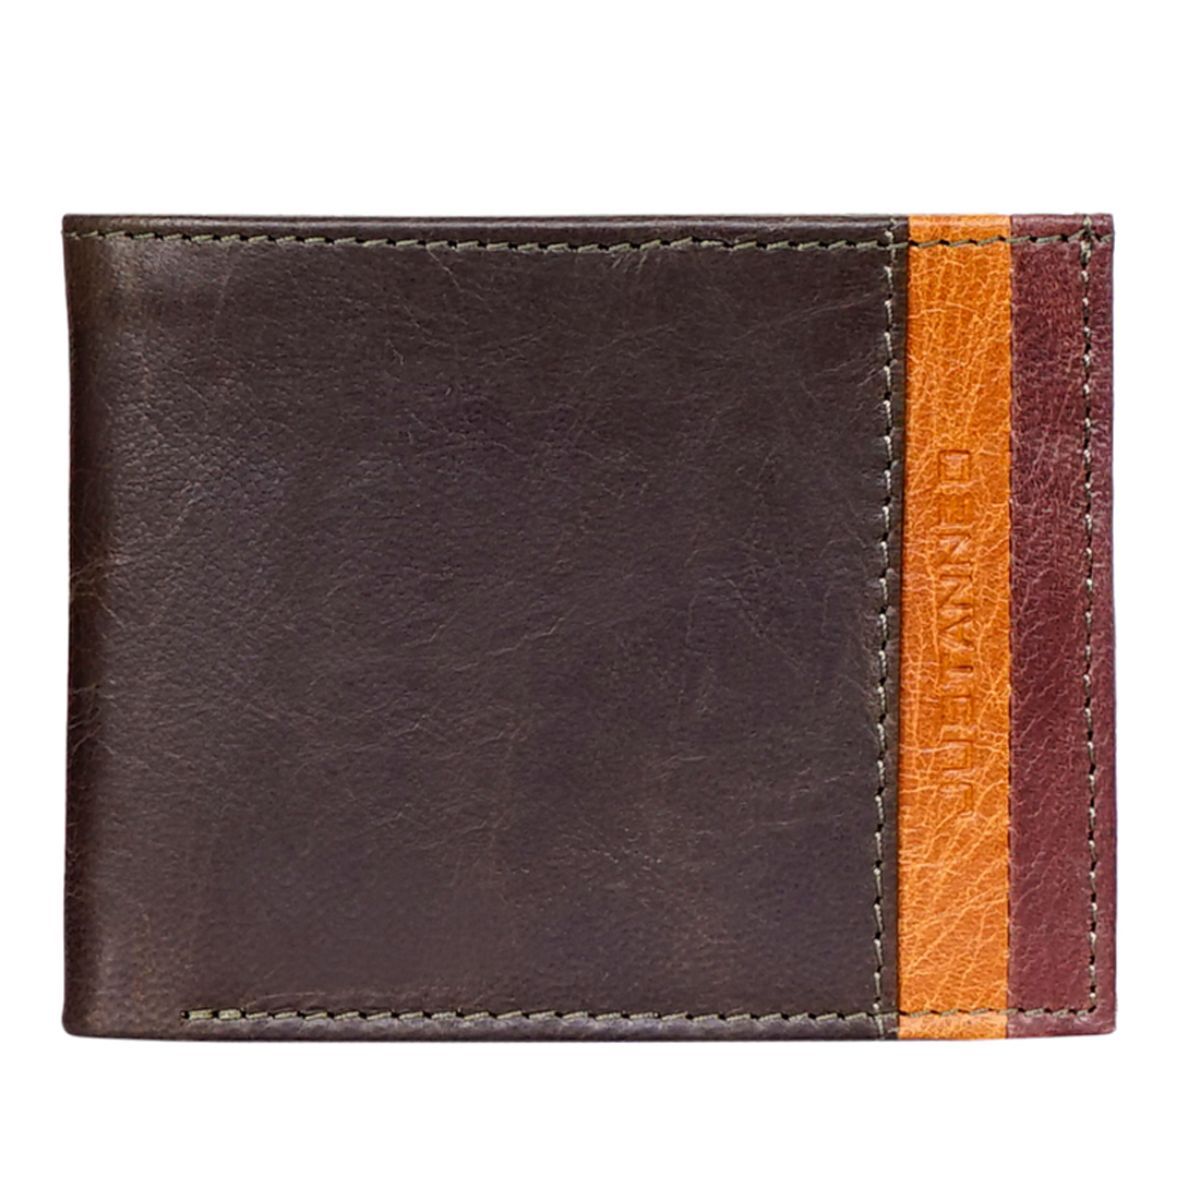 Justanned Men'S Leather Tan Stripe Wallet